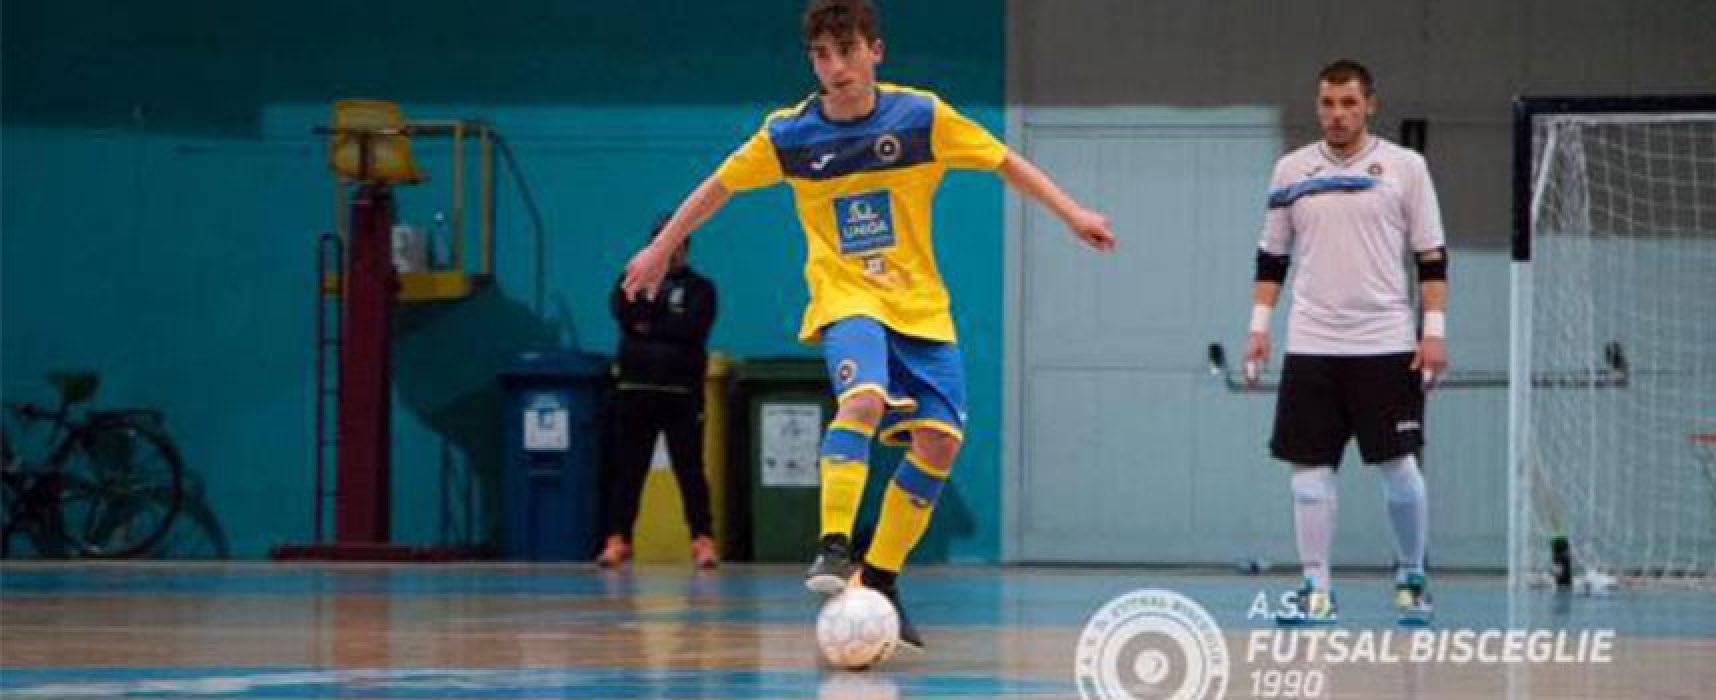 Futsal Bisceglie, rinnovo anche per il giovane Cassanelli